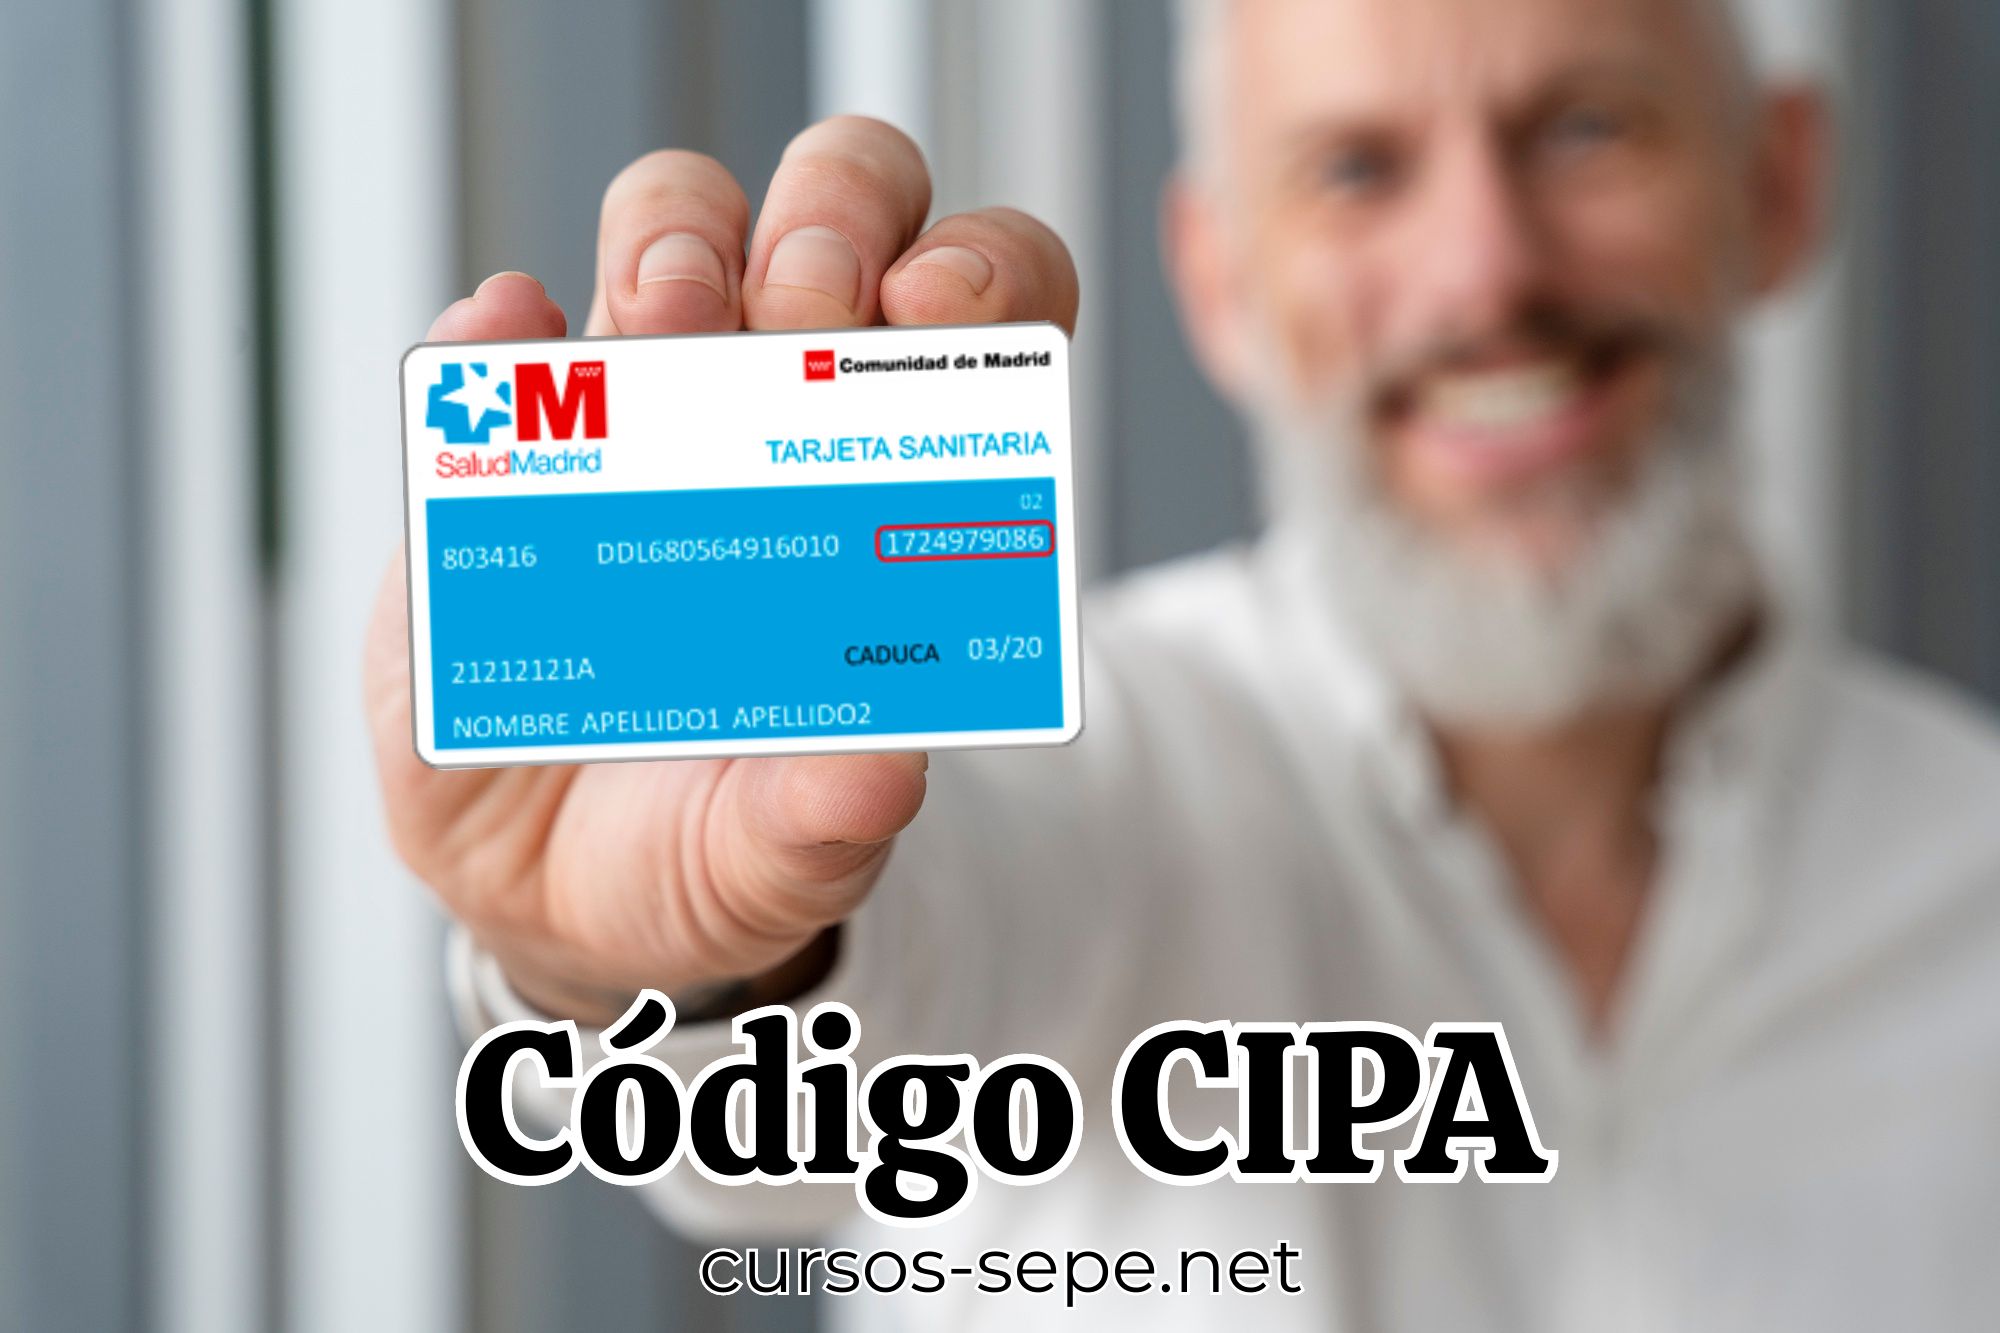 Hombre sosteniendo en la mano la tarjeta sanitaria de la Comunidad de Madrid sonde se muestra el código CIPA.